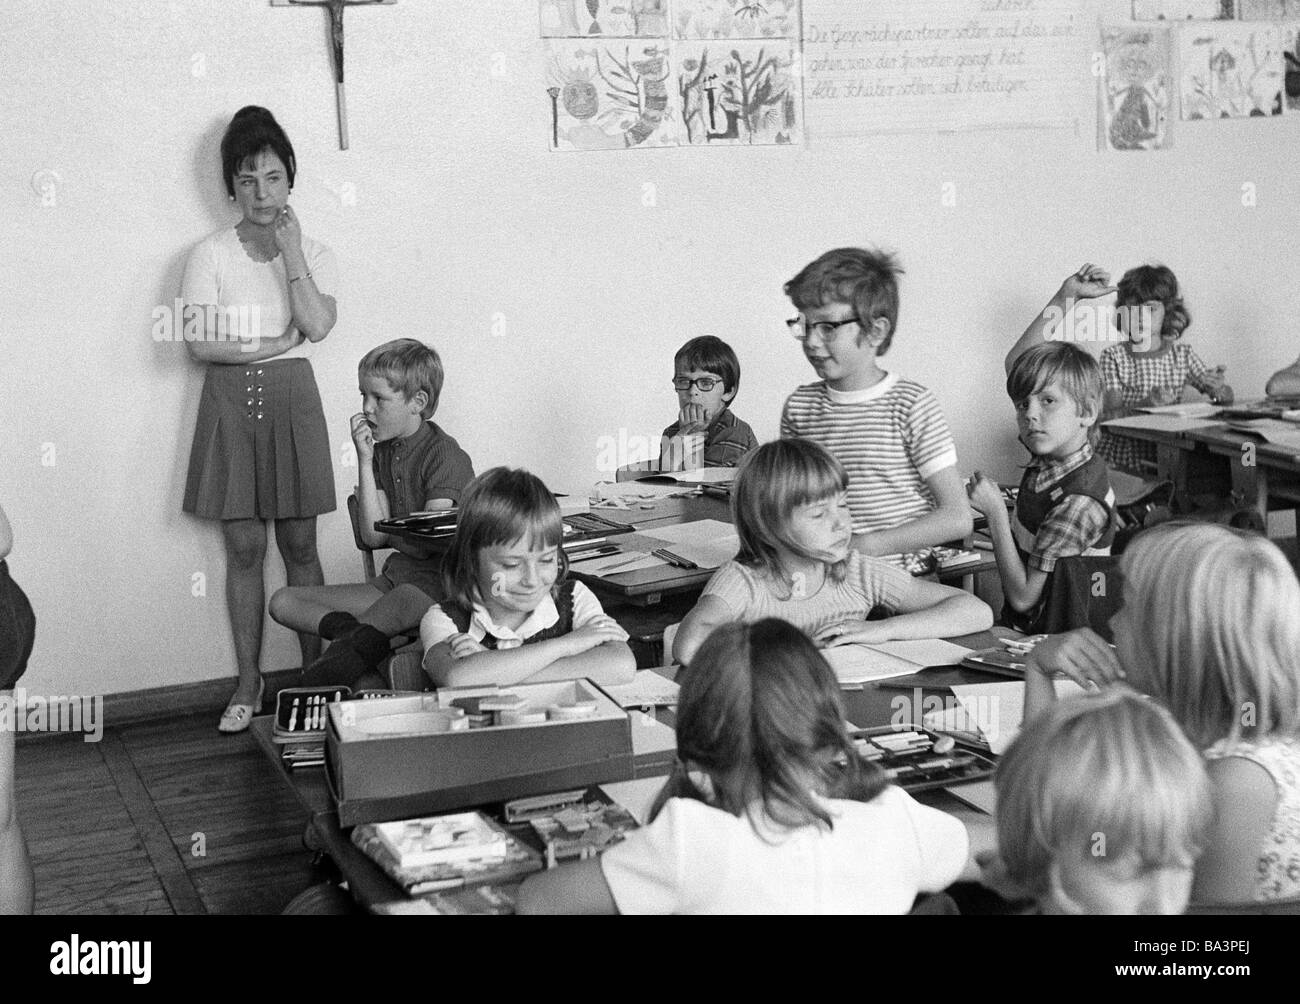 70er Jahre, schwarz / weiß Foto, Erbauung, Schule, Schüler und Schülerinnen in einer Schulklasse im Unterricht, Lehrerin, Kinder im Alter von 7 bis 10 Jahren Stockfoto